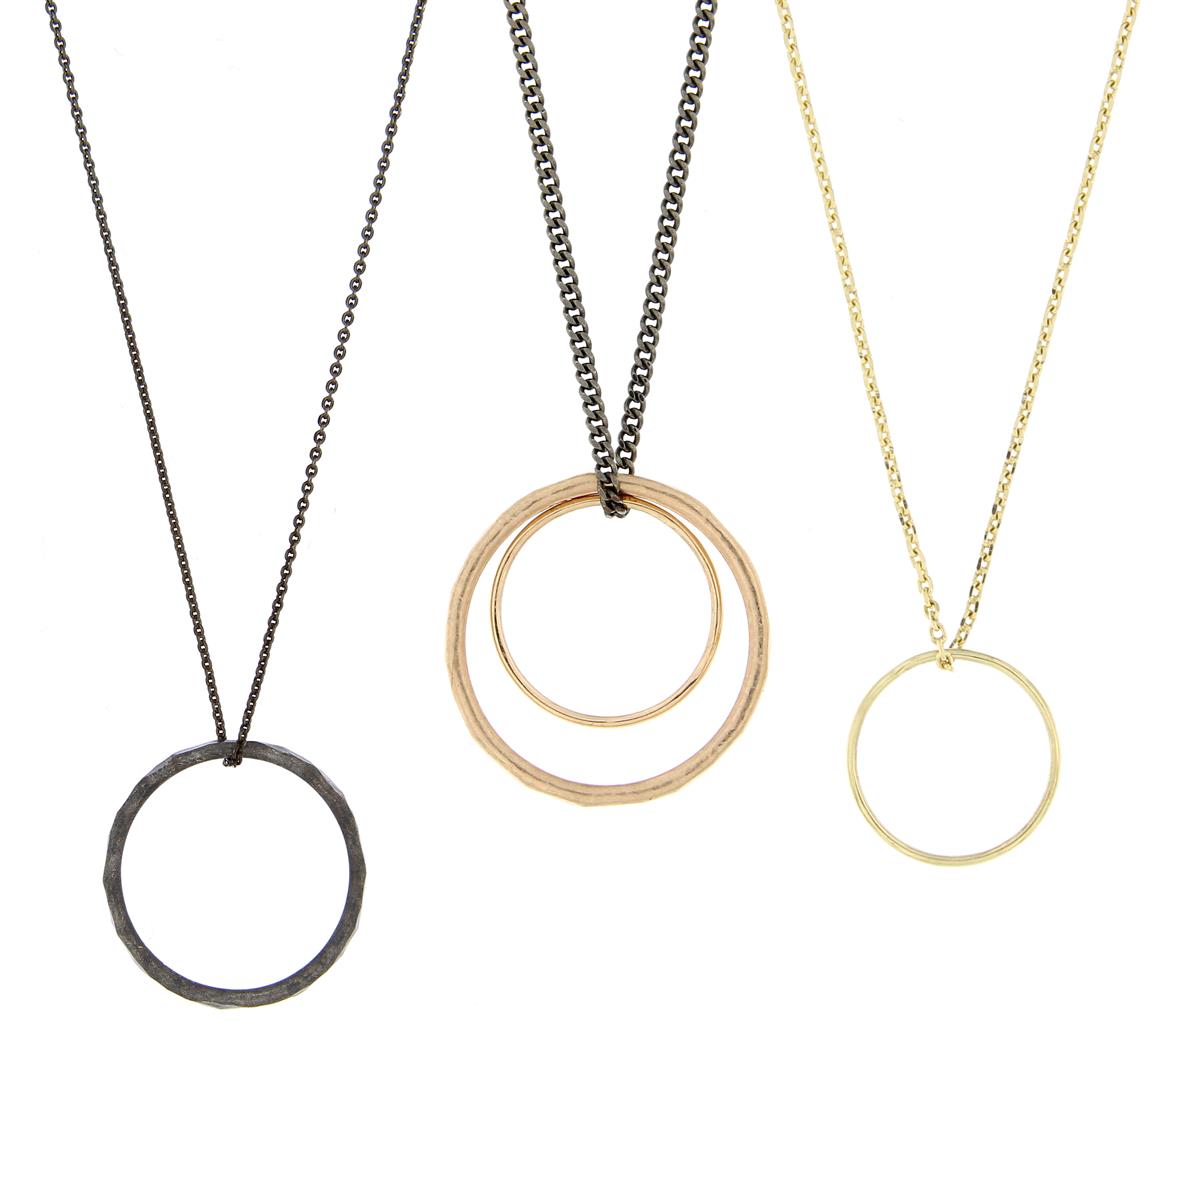 Katie g. Jewellery - Ringe auf Ketten in silber und Gold 3